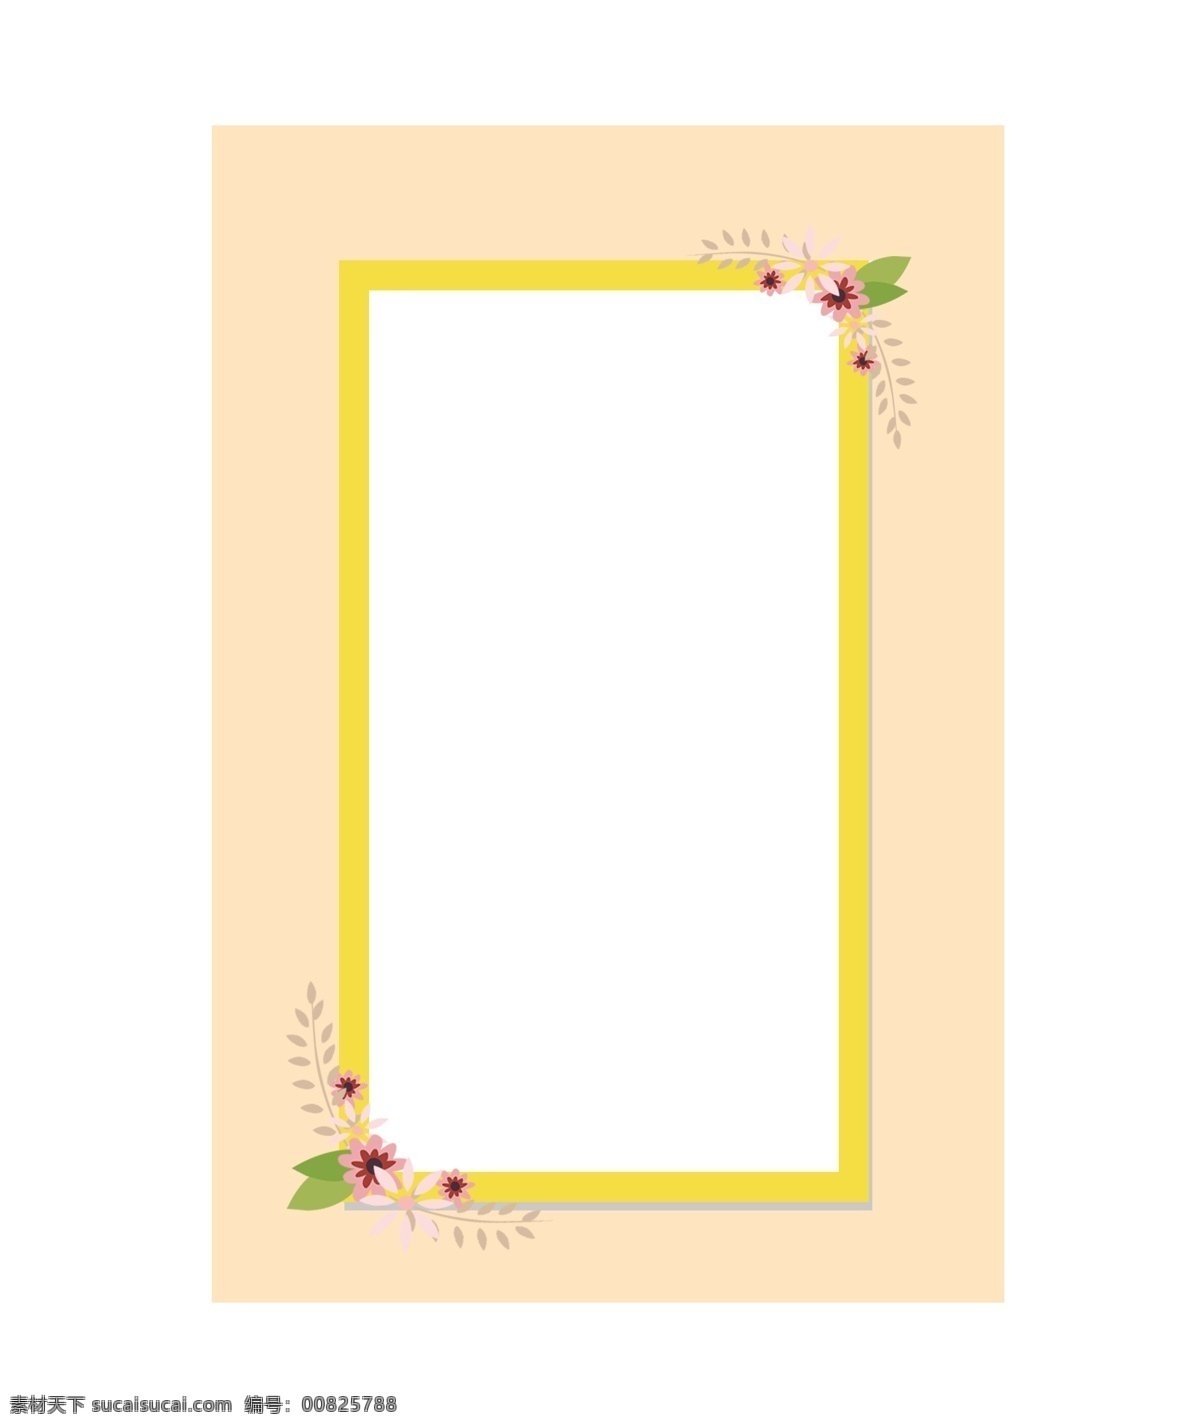 花朵 装饰 边框 插画 花朵装饰边框 粉色花朵 黄色边框 春天的边框 长方形边框 创意边框 卡通边框